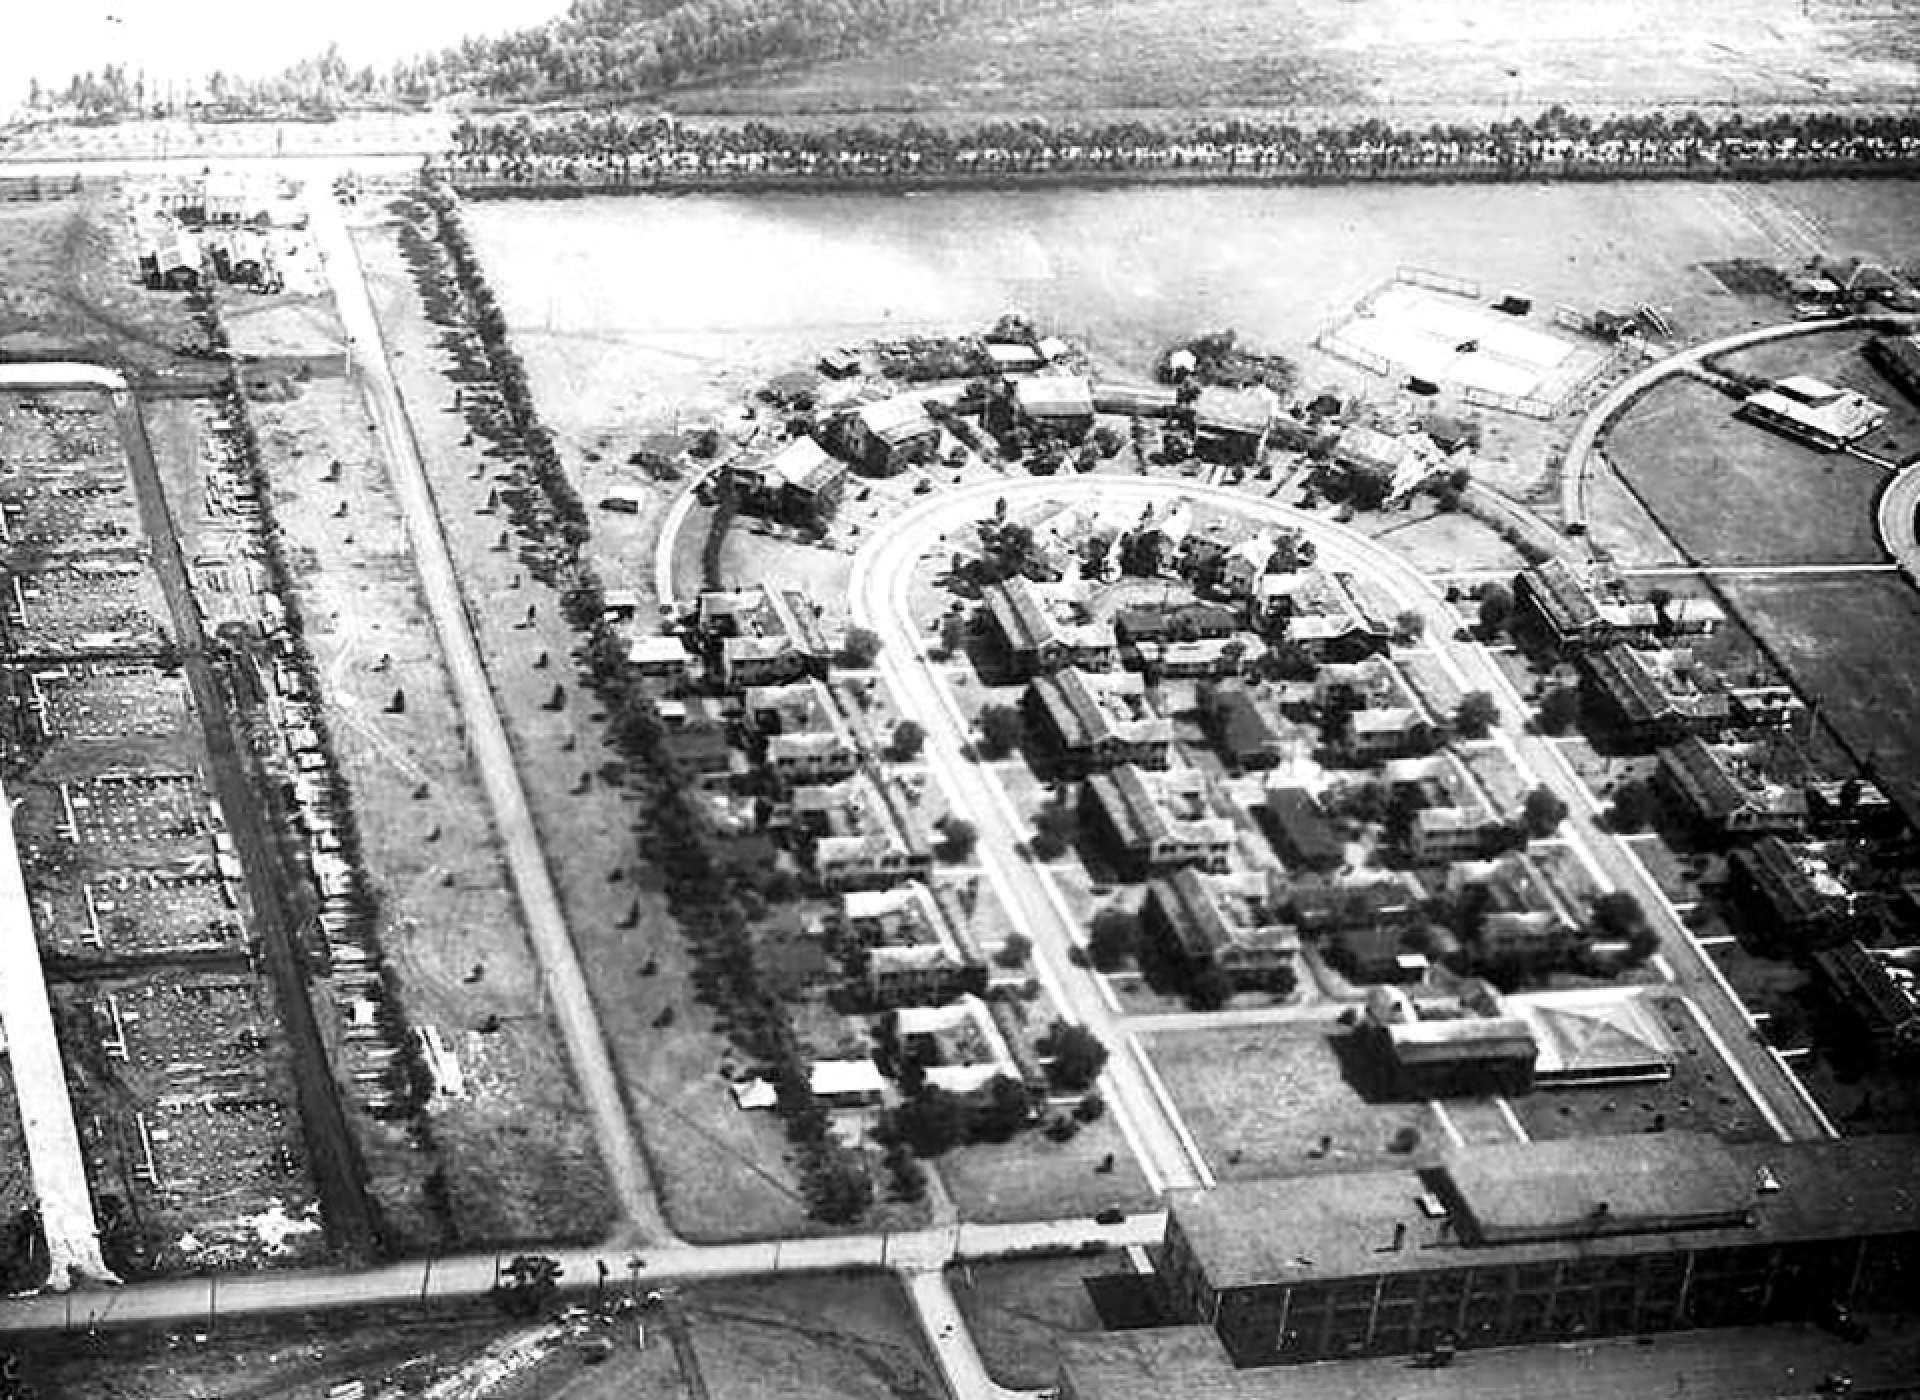 Schofield Barracks in 1920